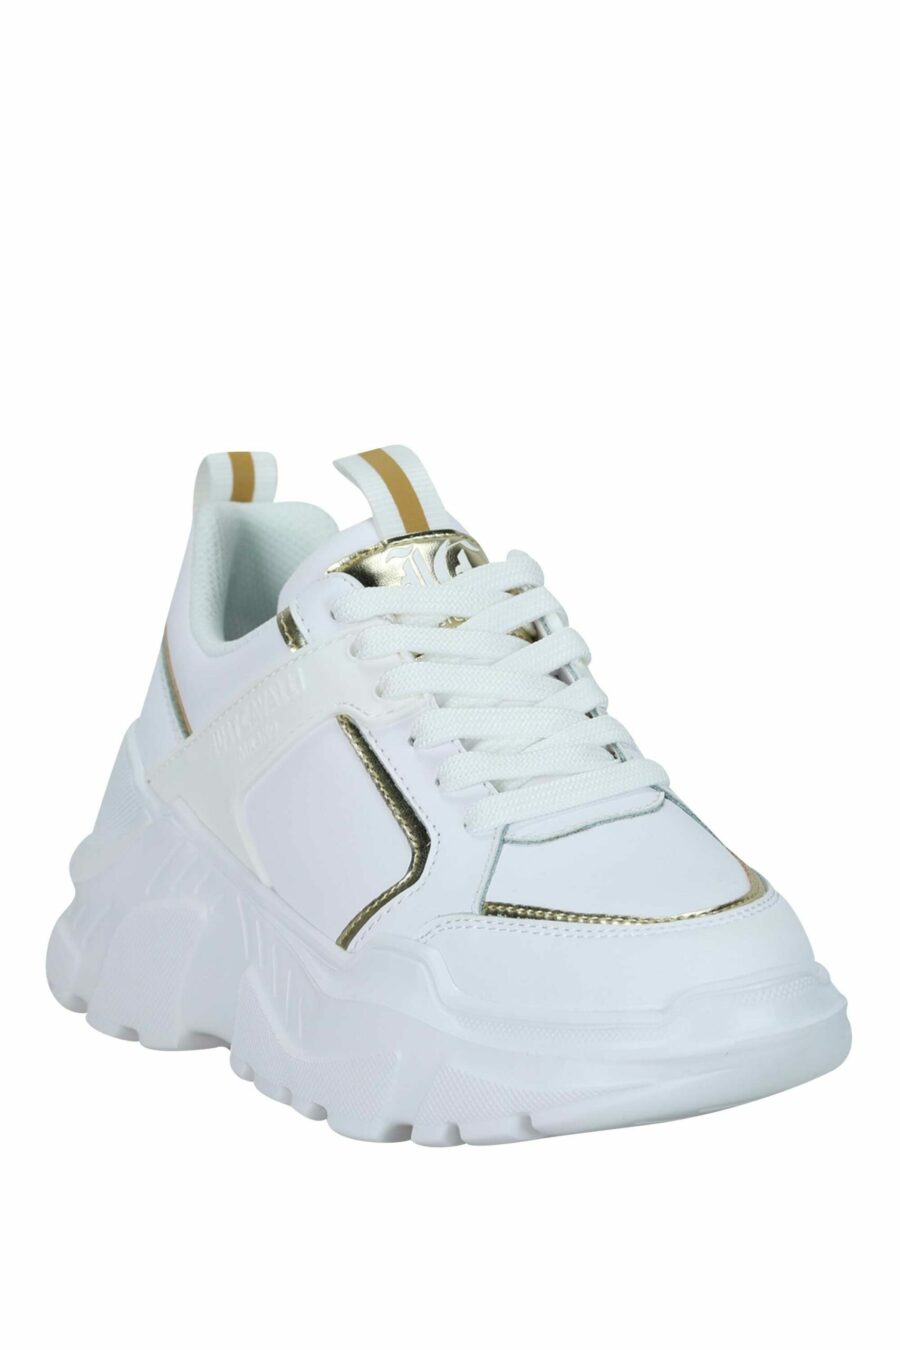 Zapatillas blancas con lineas doradas y logo monocromático - 8052672731968 1 scaled